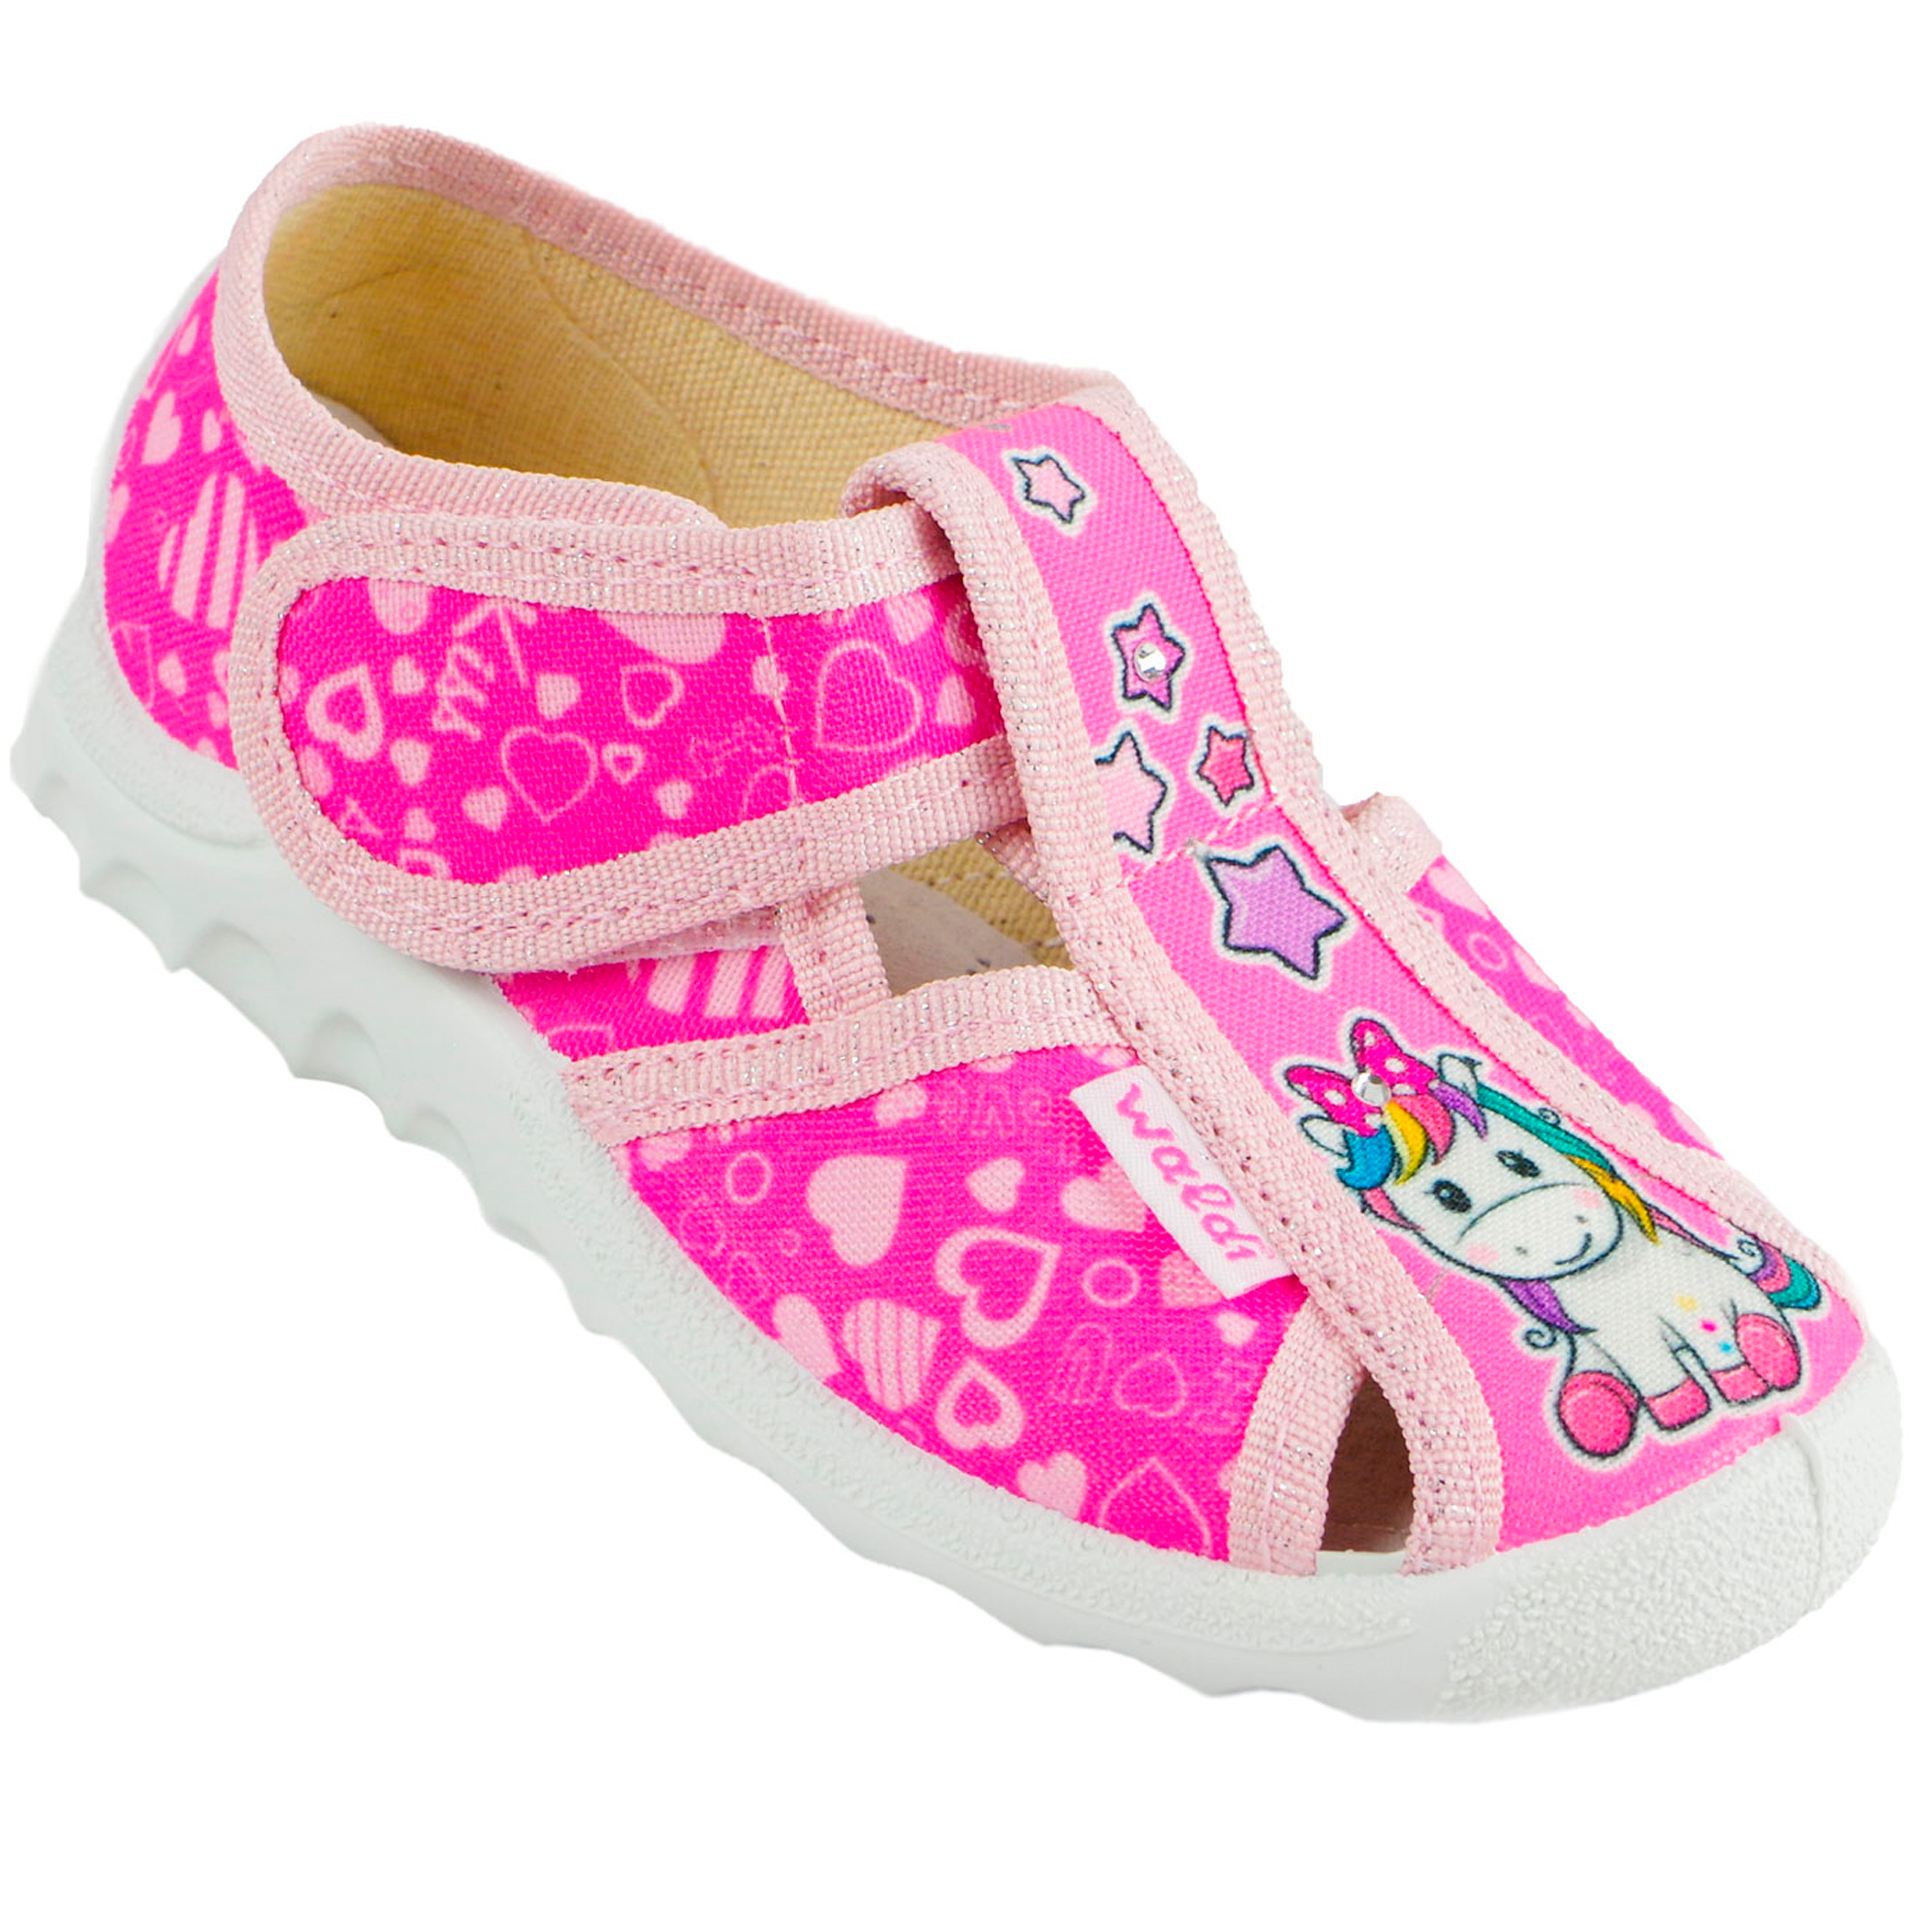 Текстильная обувь для девочек Тапочки Маша (2019) цвет Розовый 21-27 размеры – Sole Kids